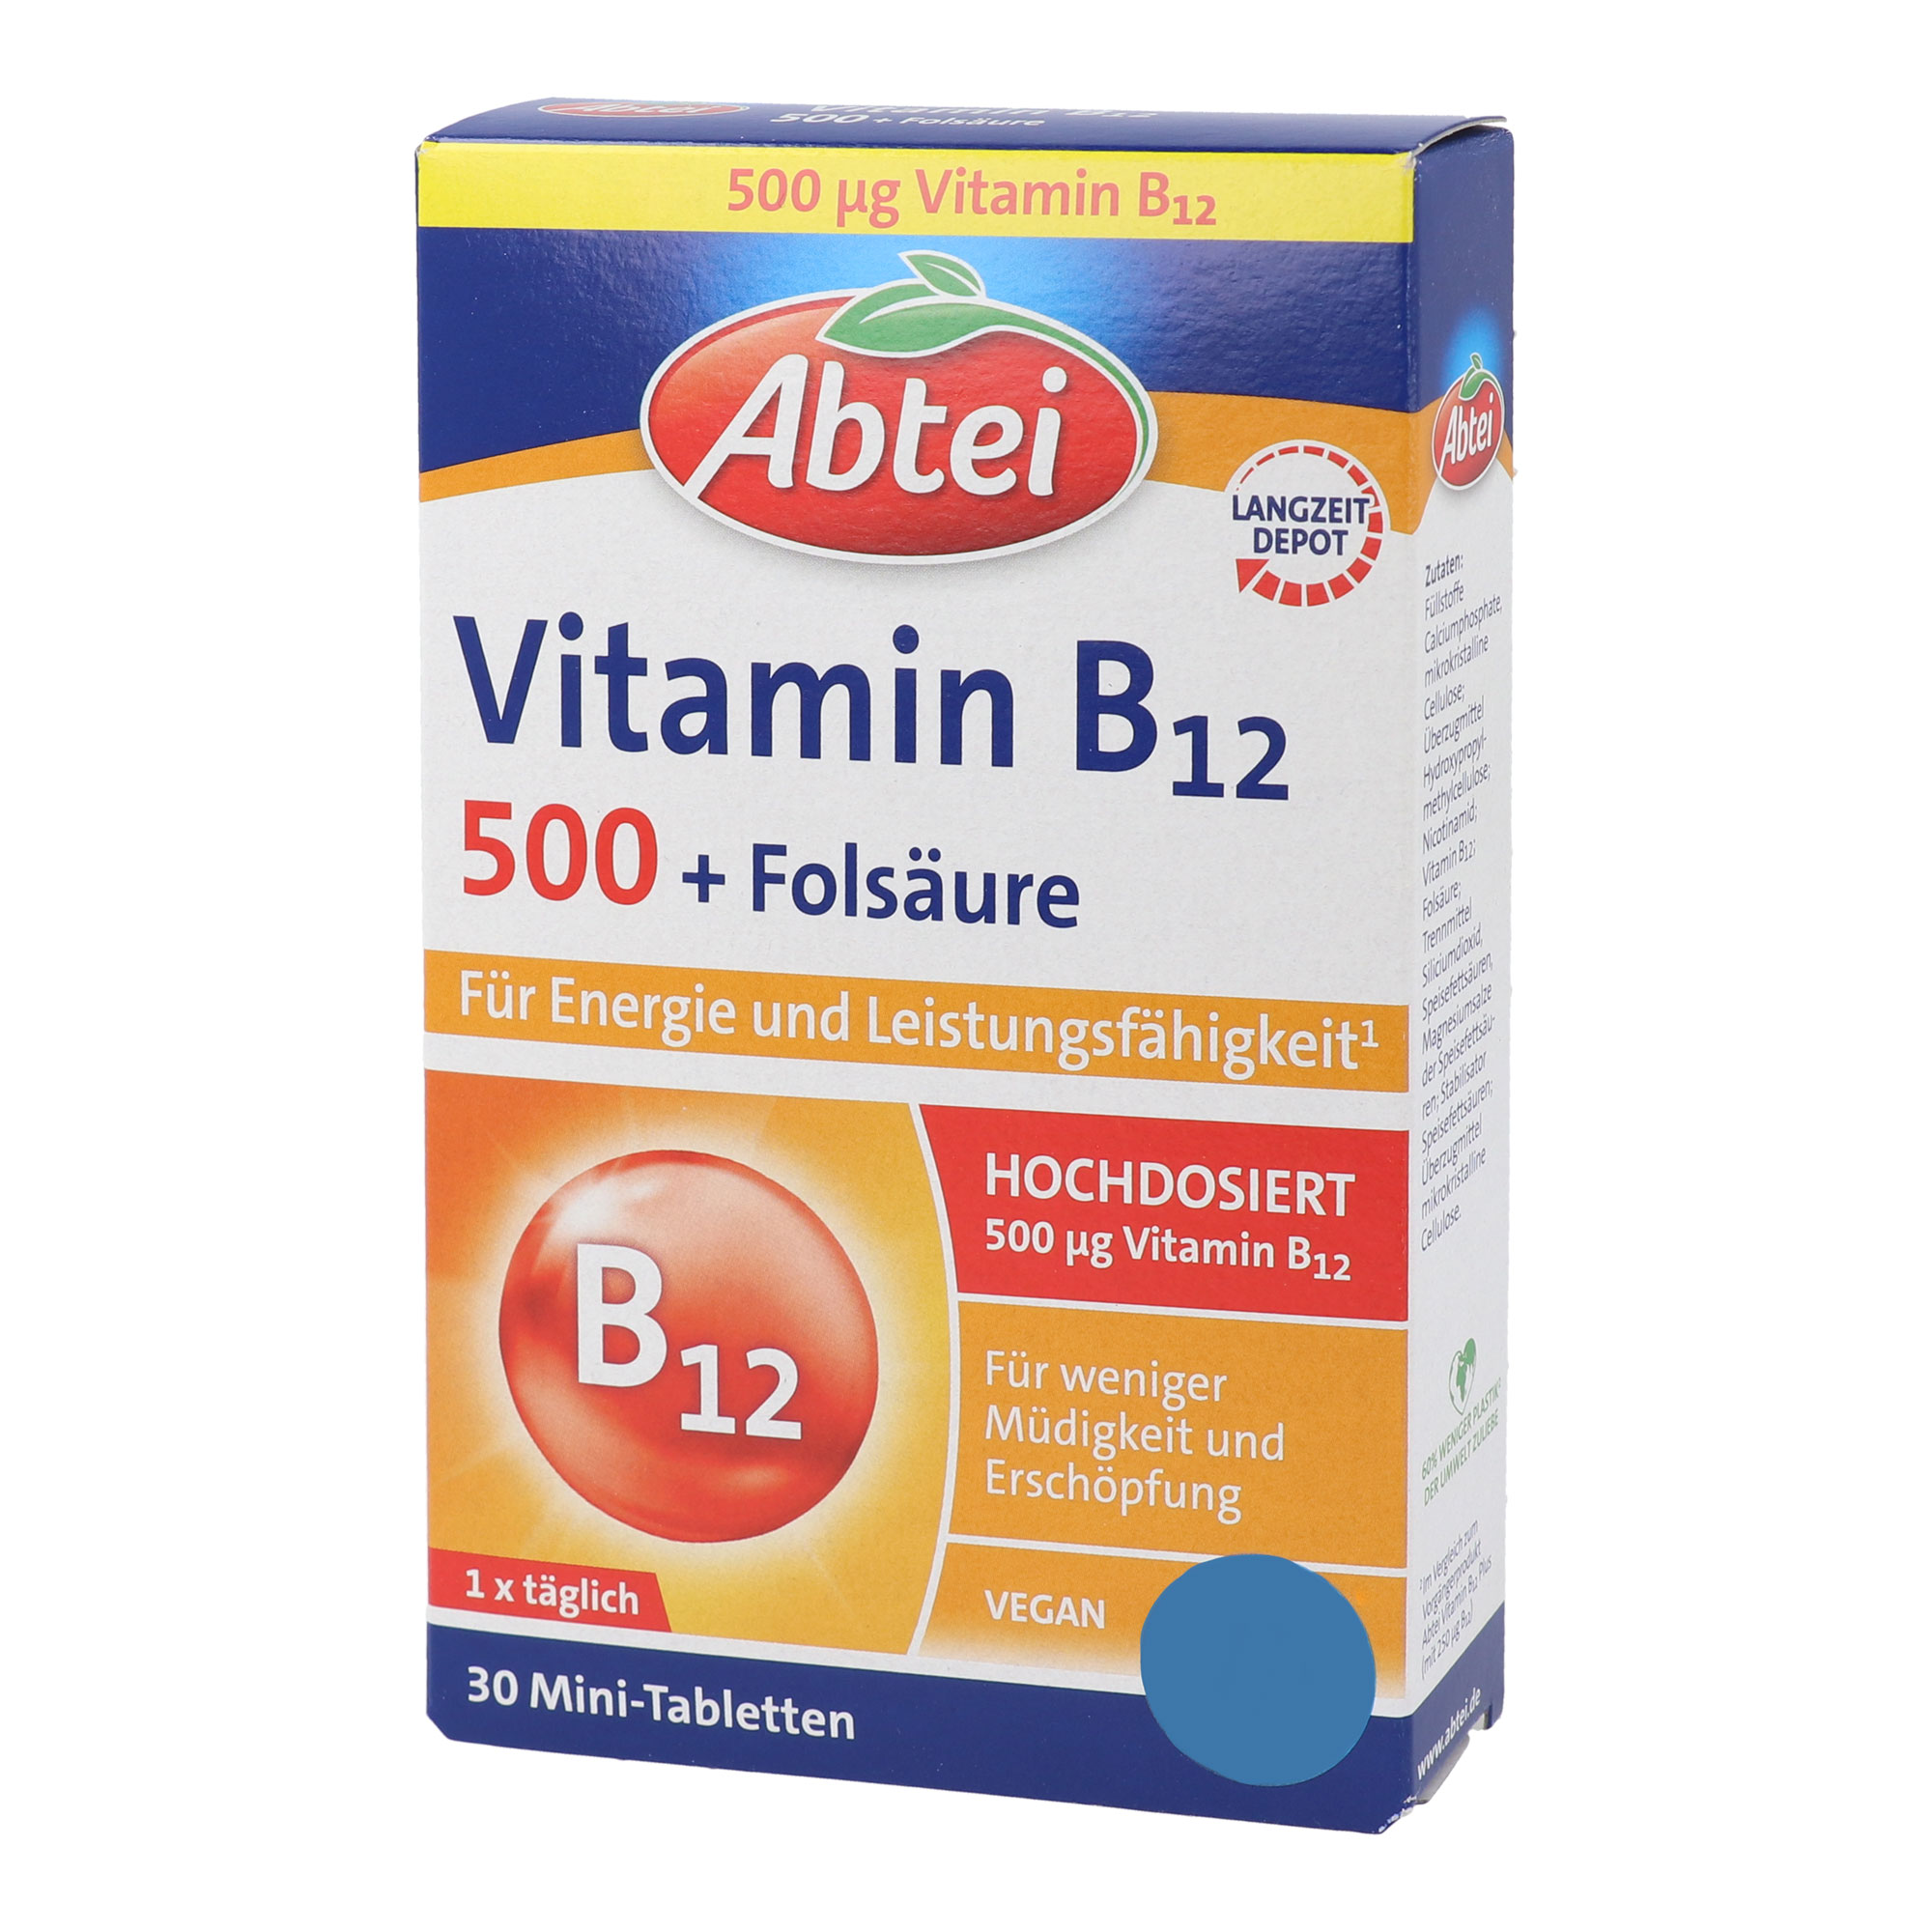 Nahrungsergänzungsmittel mit Vitamin B12, Niacin und Folsäure.